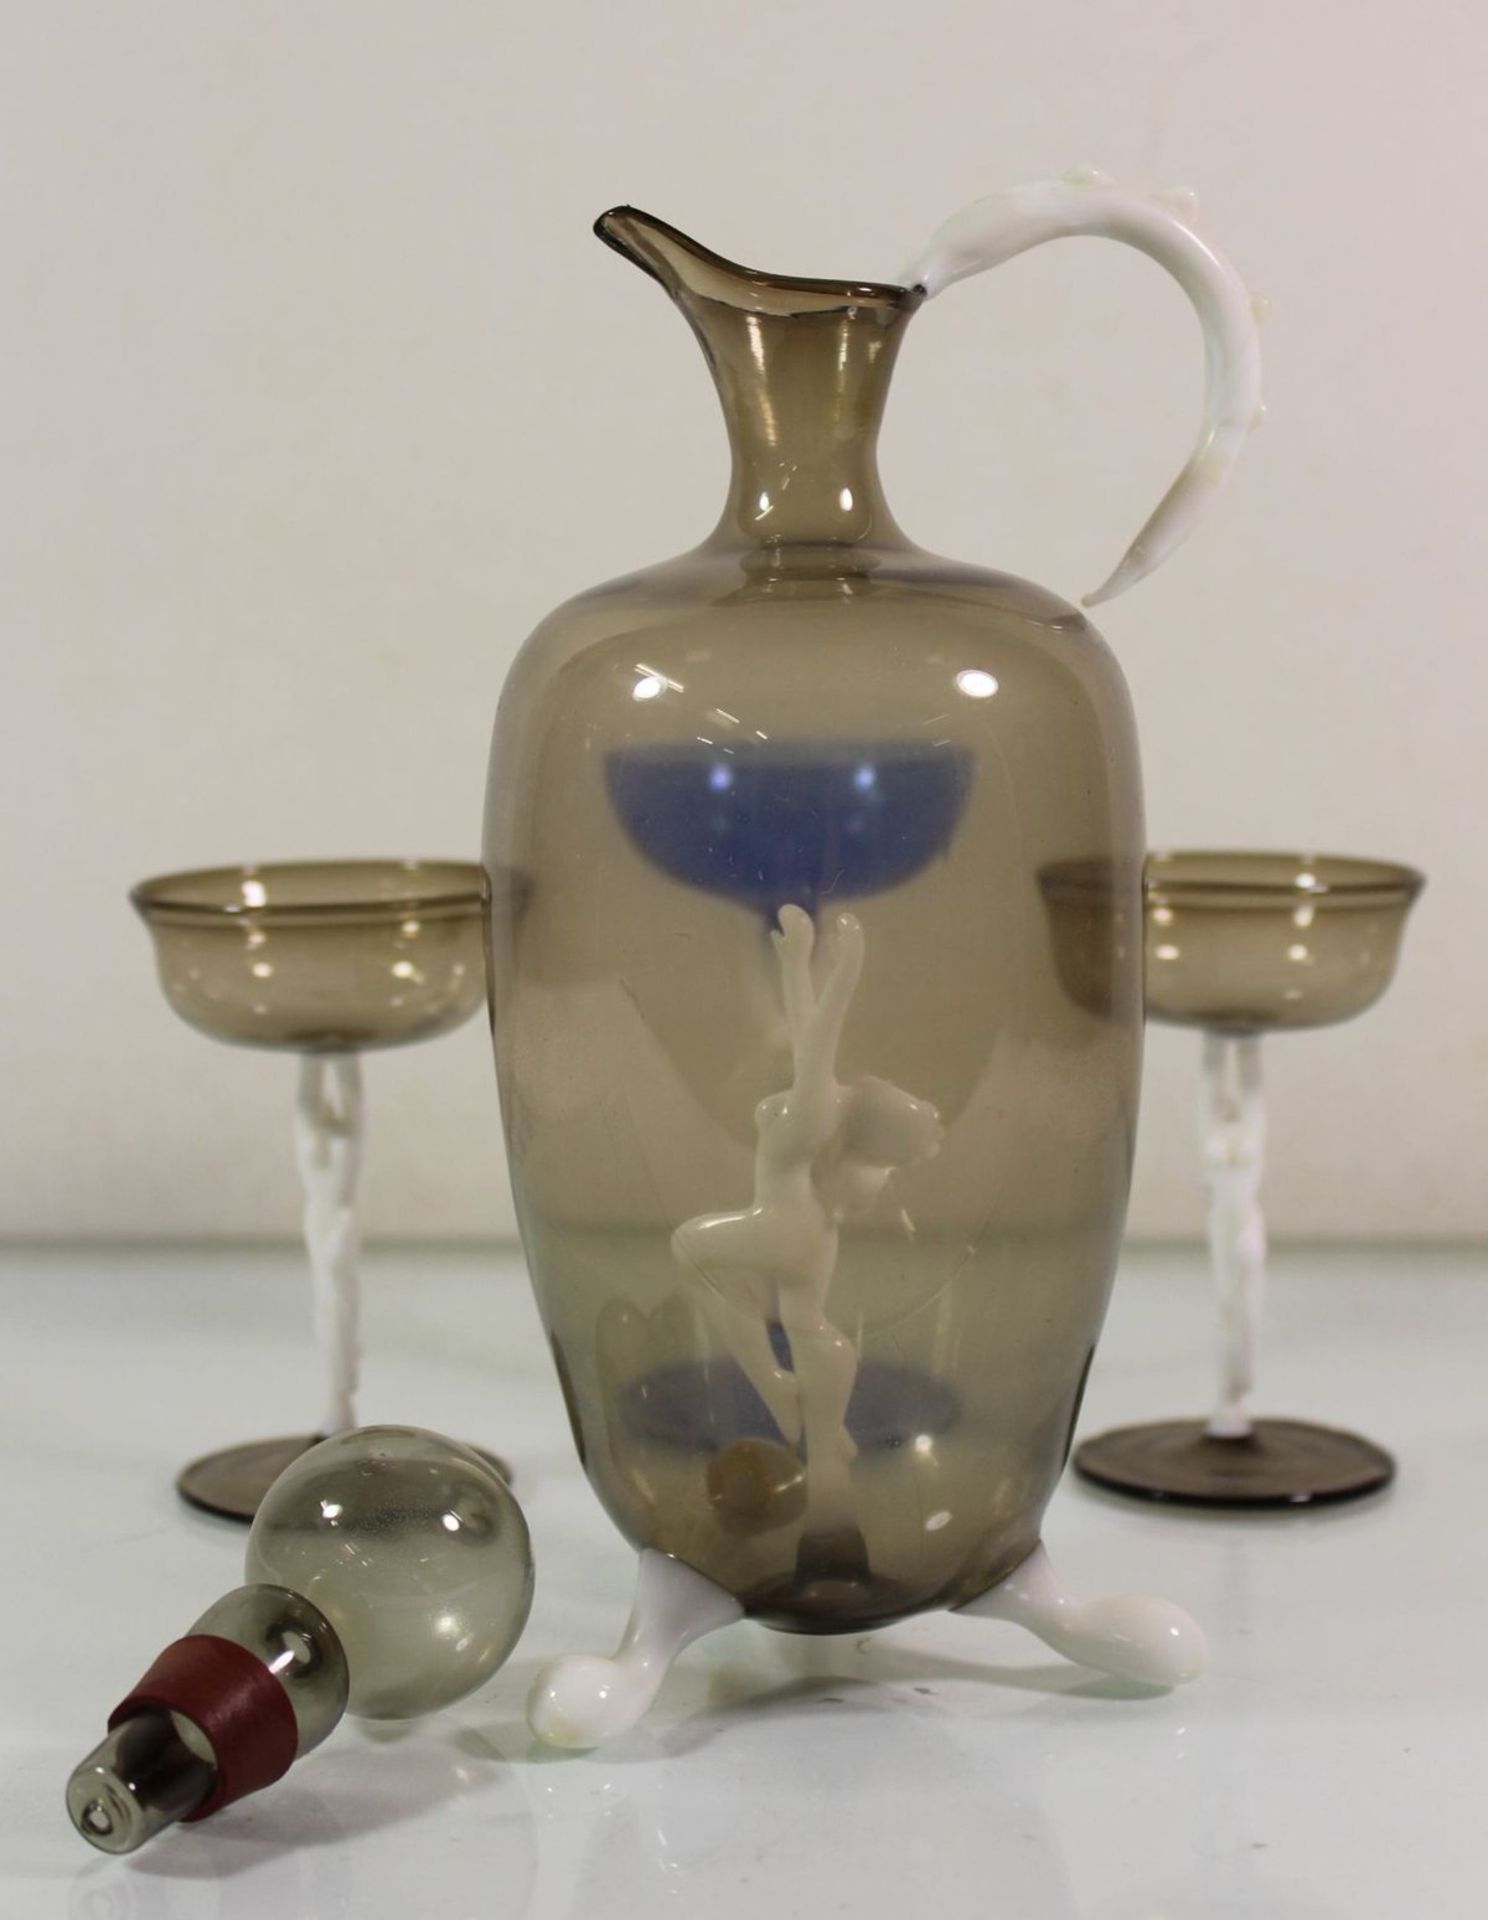 Karaffe mit 2 passenden Gläsern sowie eines anbei, wohl Lauscha Bimini, Karaffe 1x Fuss geklebt, - Bild 4 aus 5